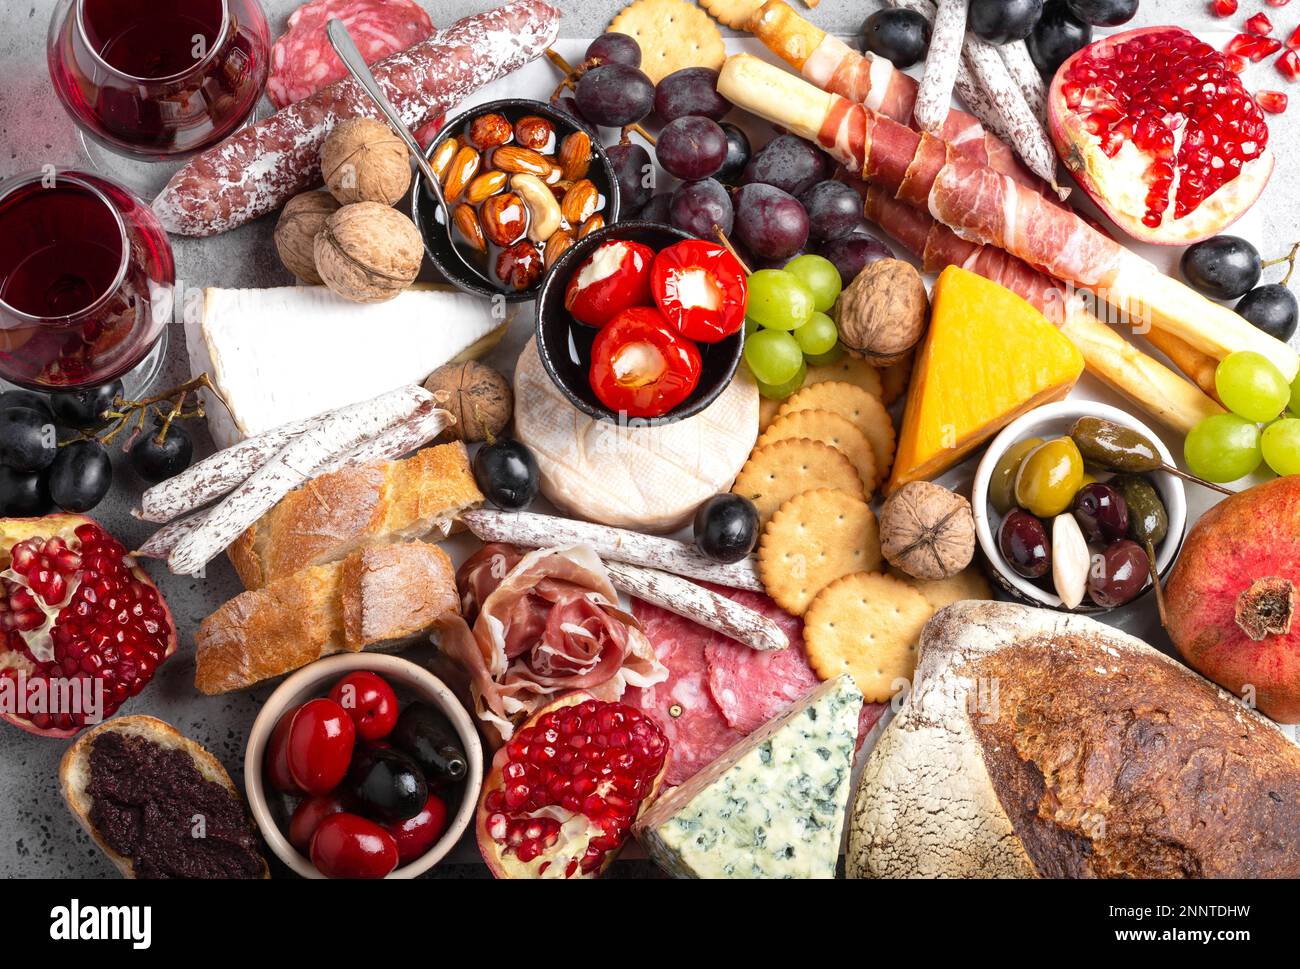 Festliche Gourmet-Mischung aus Snacks und Vorspeisen, Käse, Fleisch, Oliven, Brot, Obst, Kanapees, Wein in Gläsern. Italienisches Antipasti-Set oder spanische Tapas Stockfoto